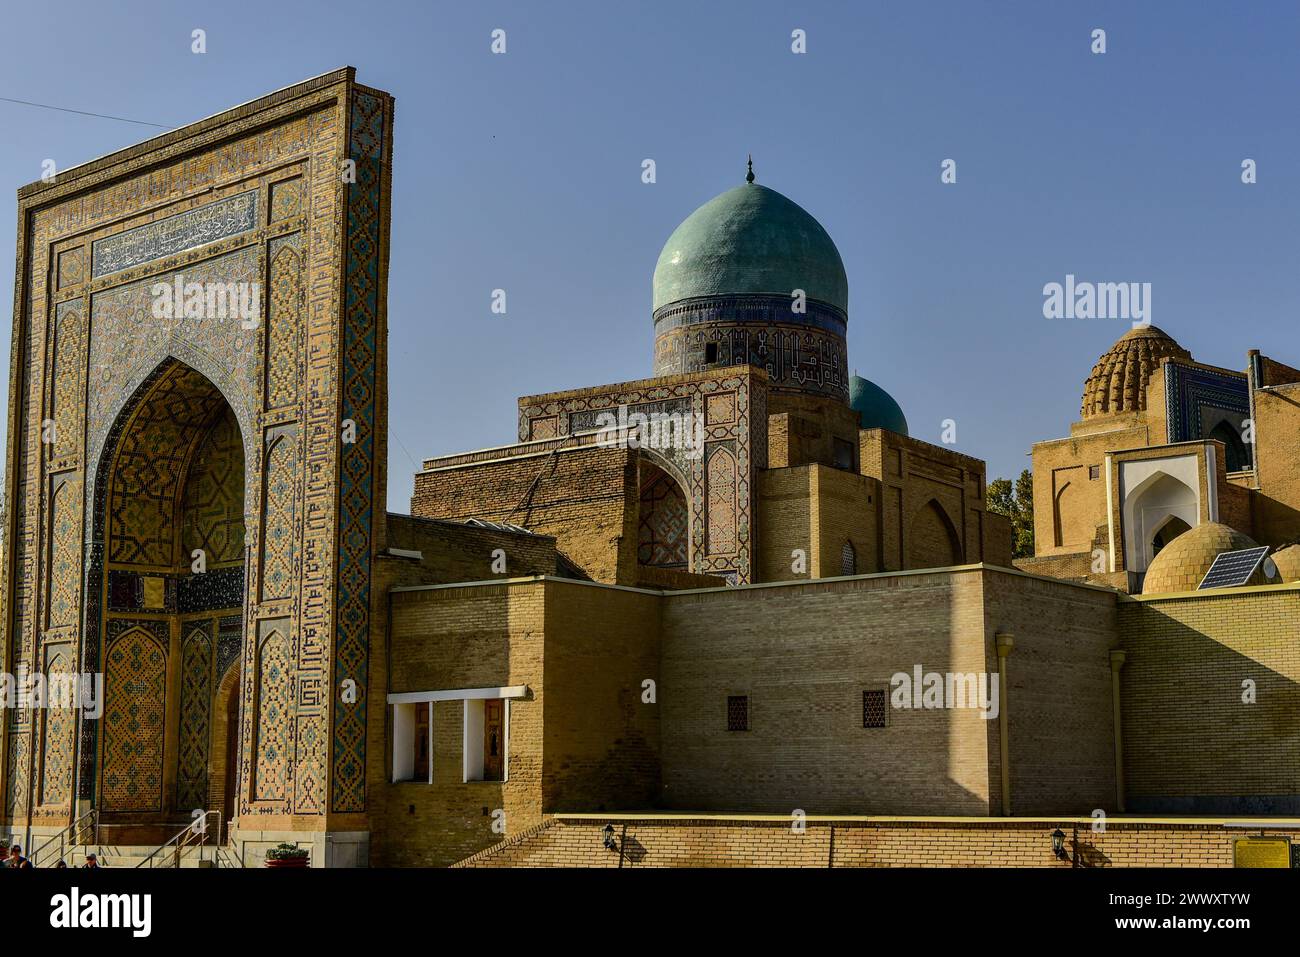 En dehors de la nécropole de Shah-i Zinda où se trouve l'avenue des mausolées. Samarcande, Ouzbékistan Banque D'Images